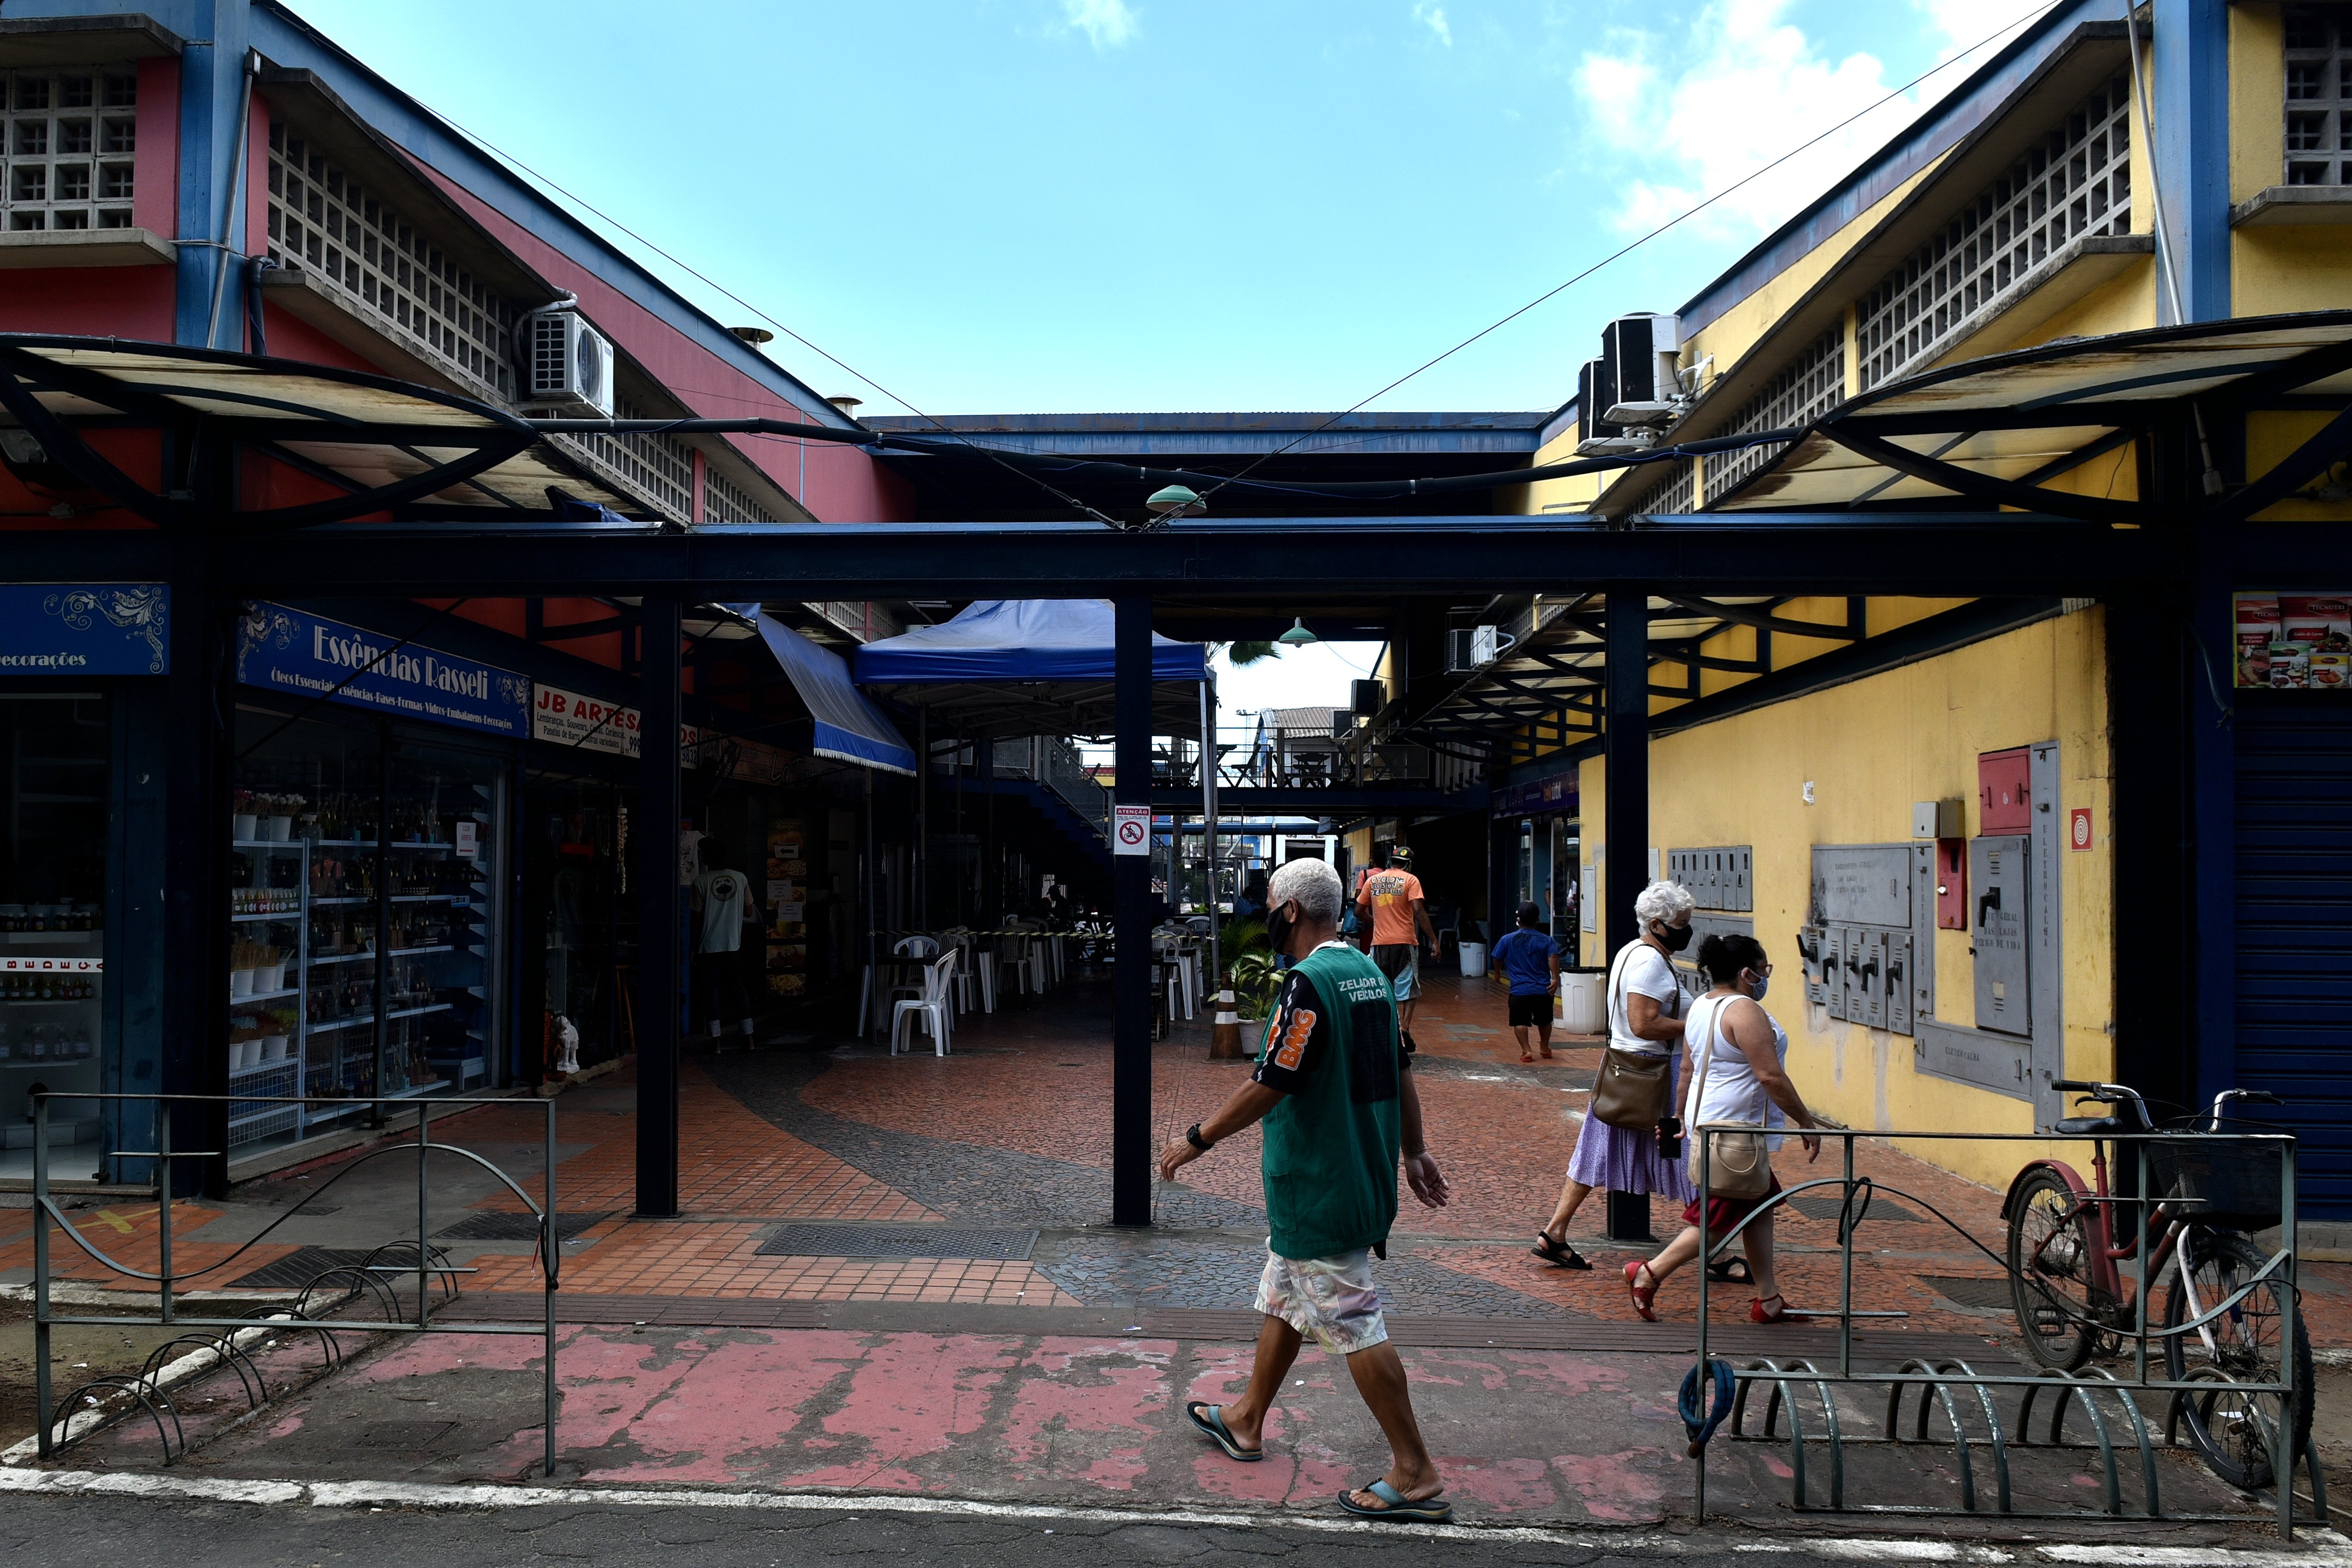 Início do dia no Mercado da Vila Rubim, em Vitória. Retratei as lojas ainda fechadas e posteriormente abertas com trabalhadores em suas atividades